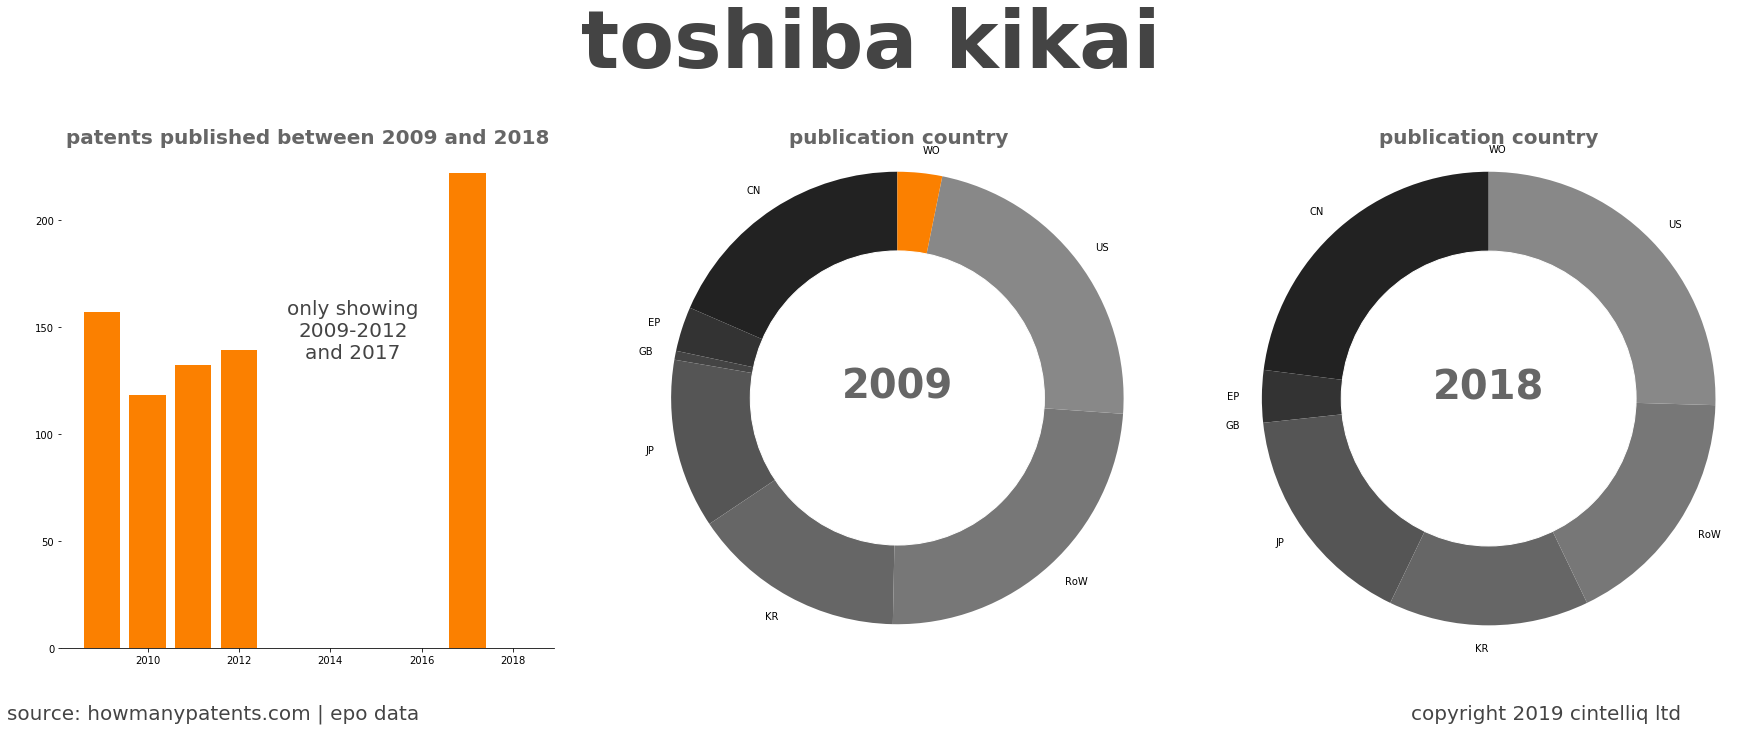 summary of patents for Toshiba Kikai